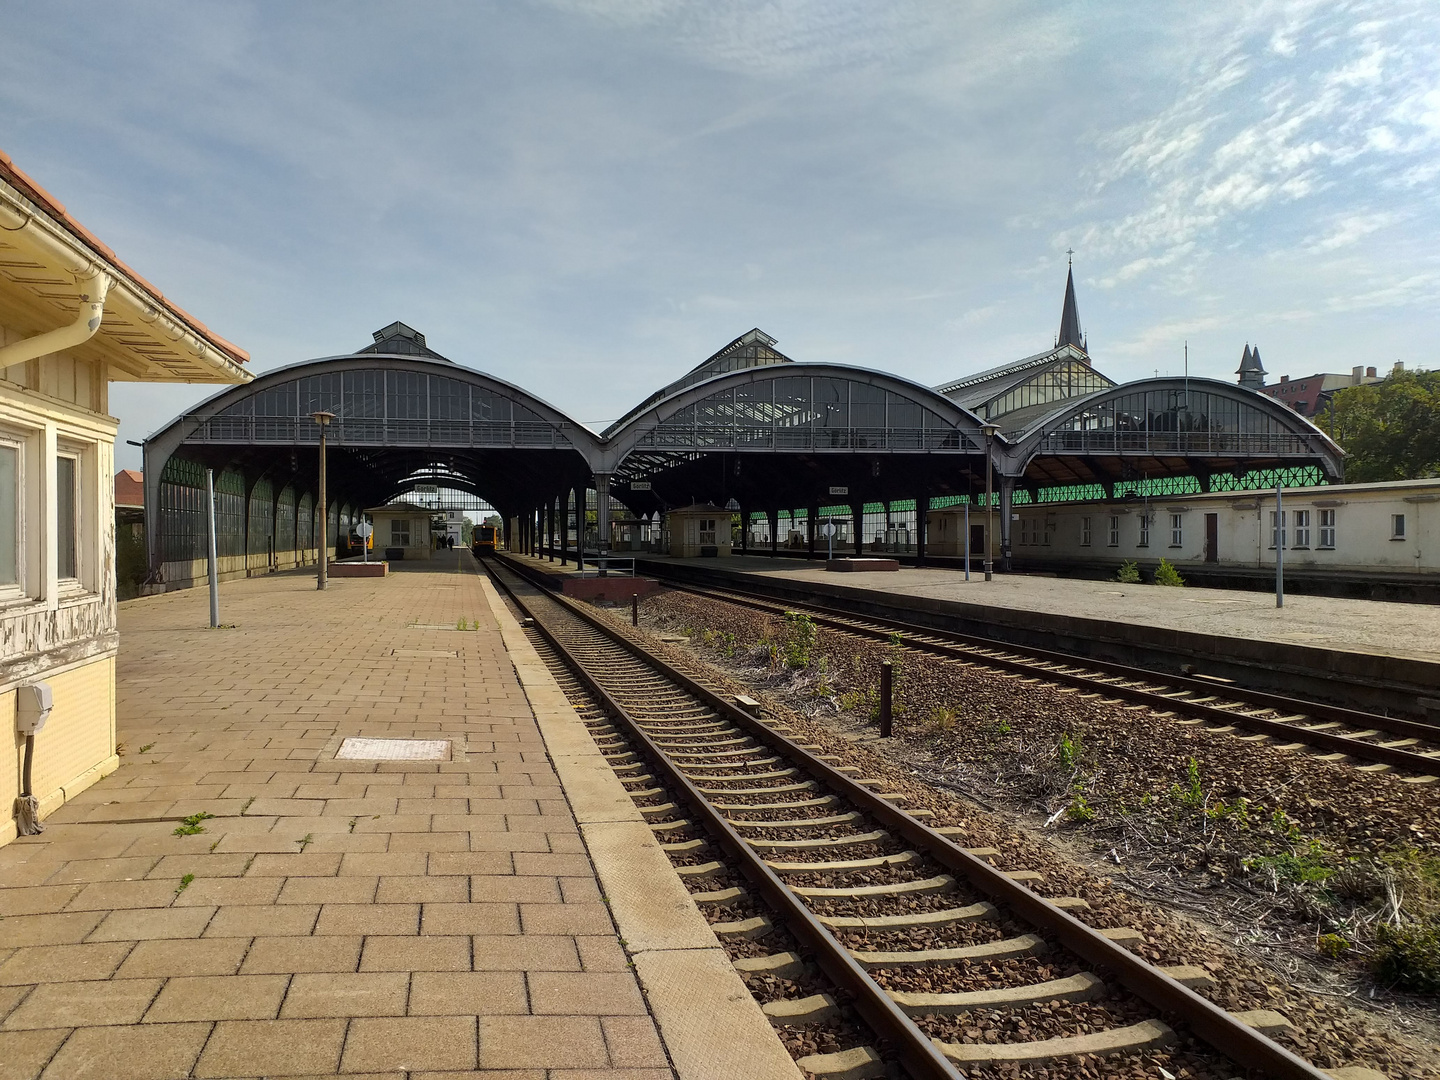 Bahnhof Görlitz